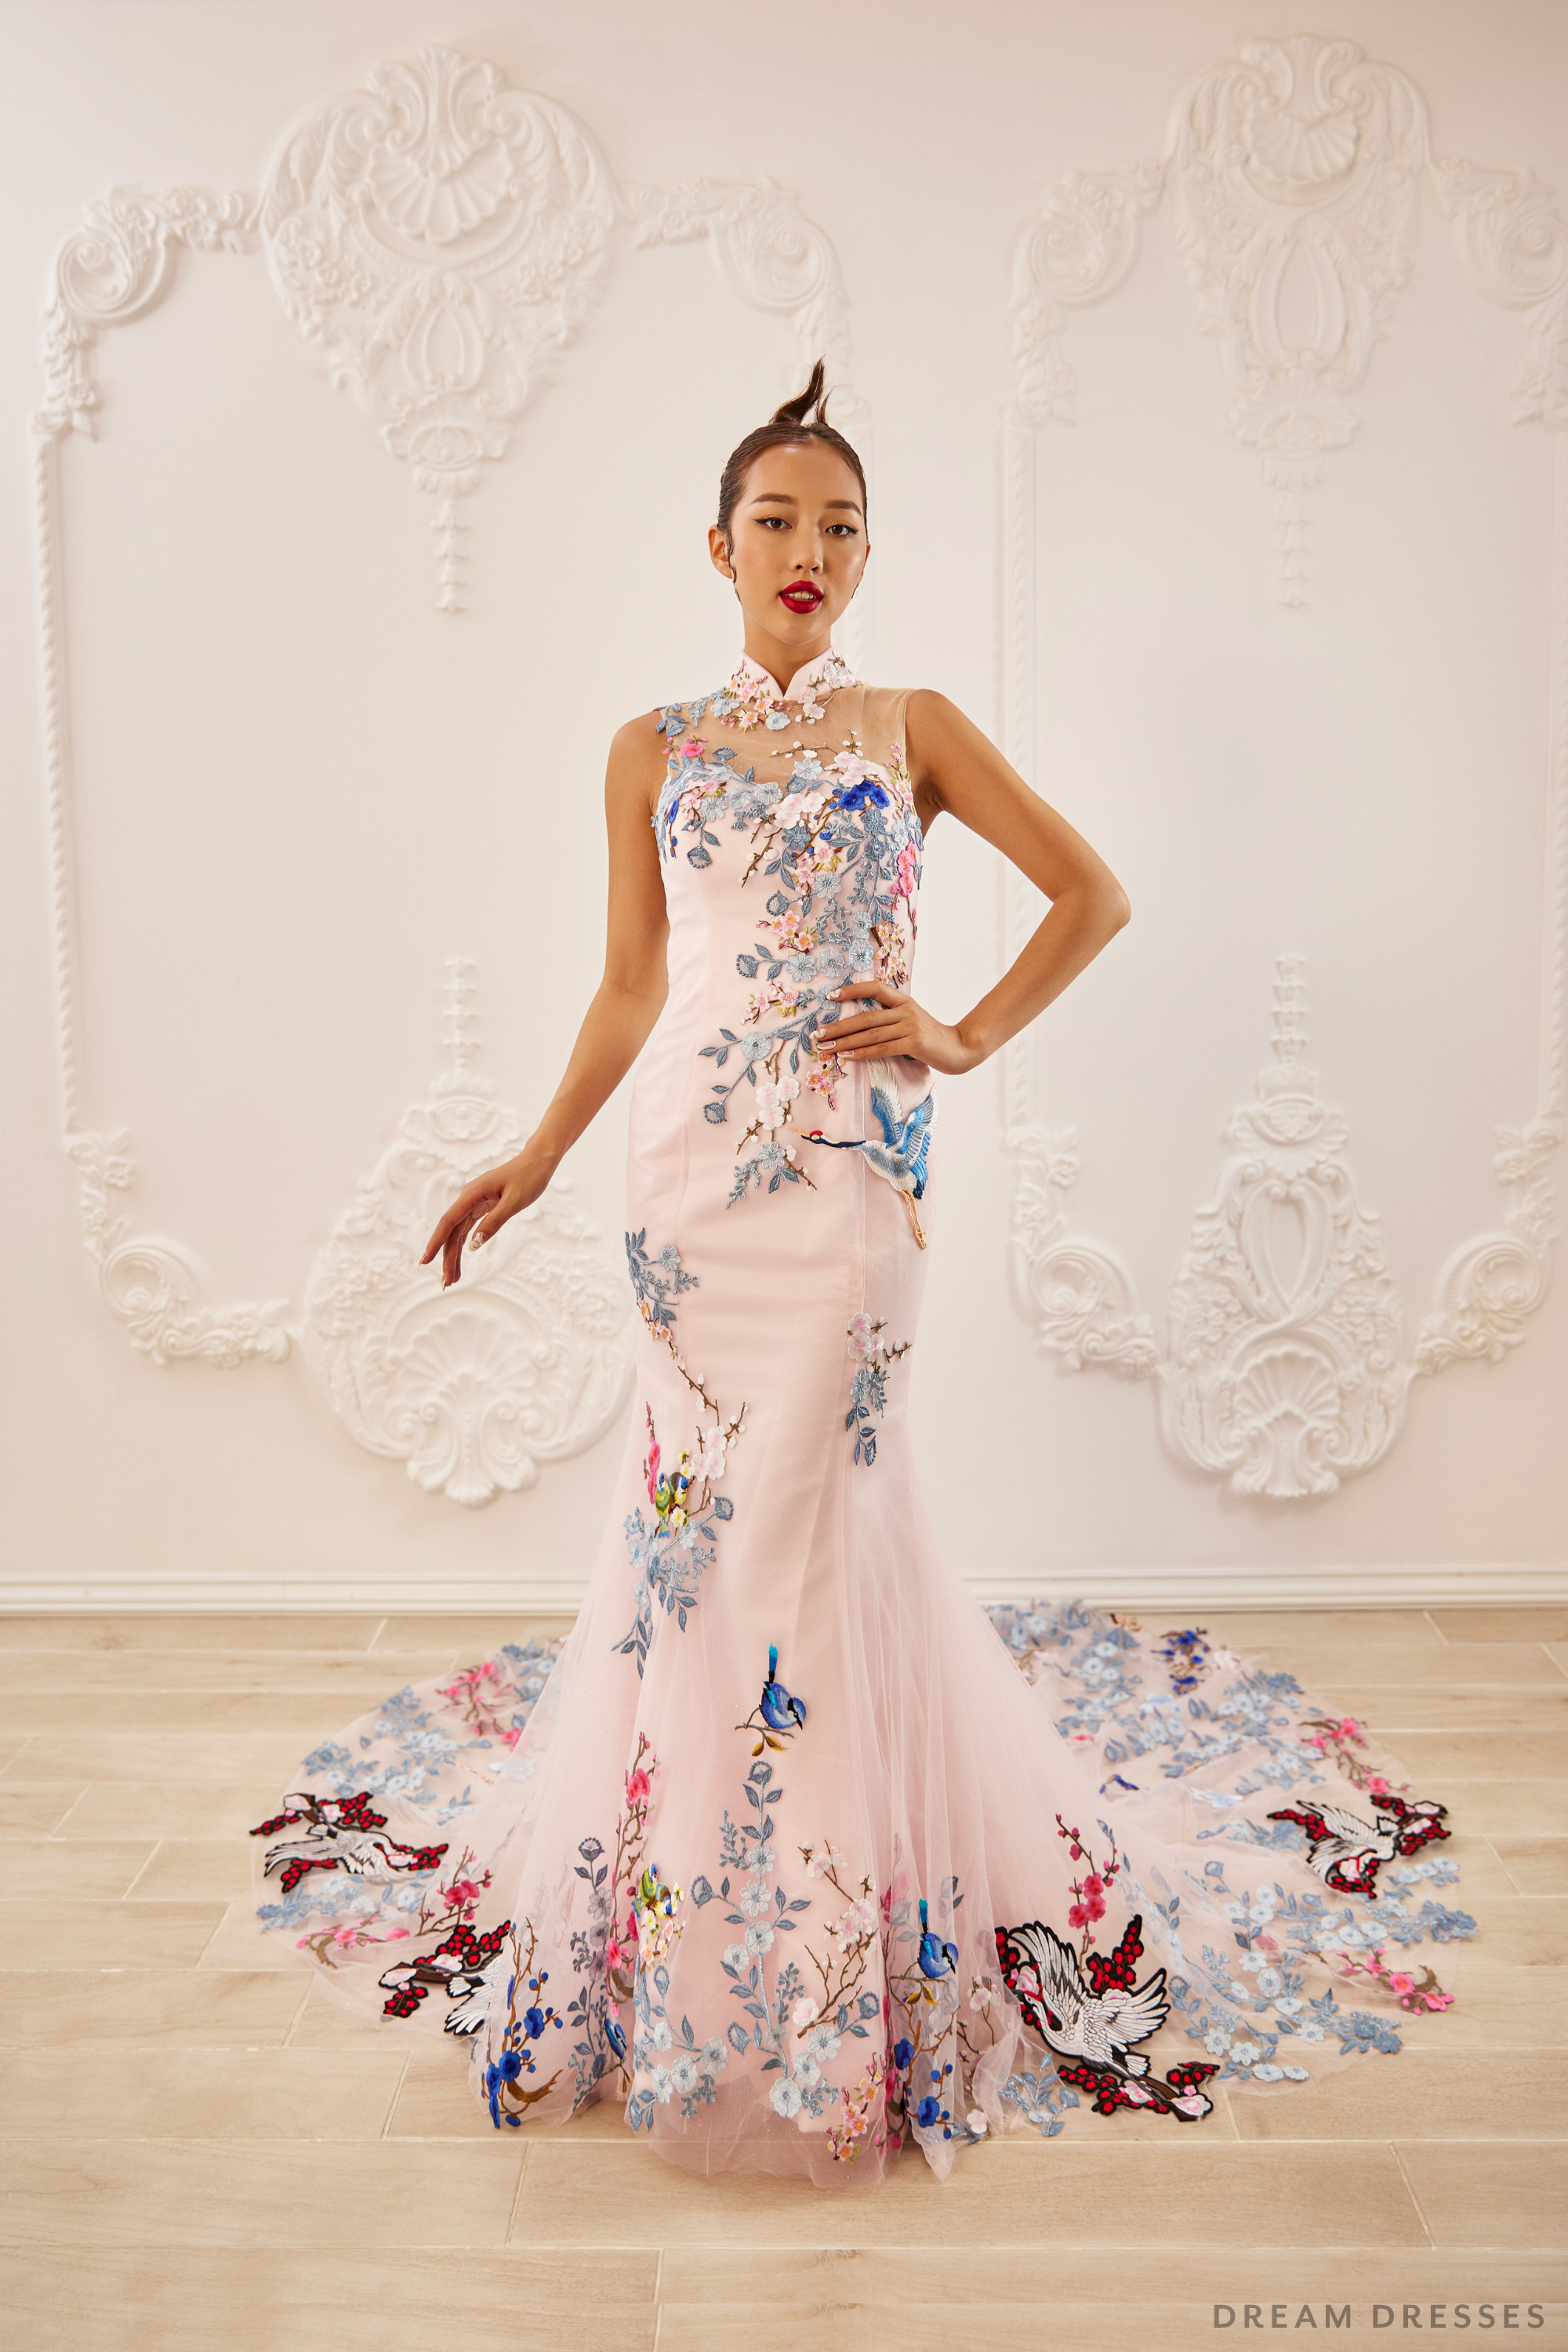 Dress: MA00070 by Kim Kassas — Kinsley James Couture Bridal